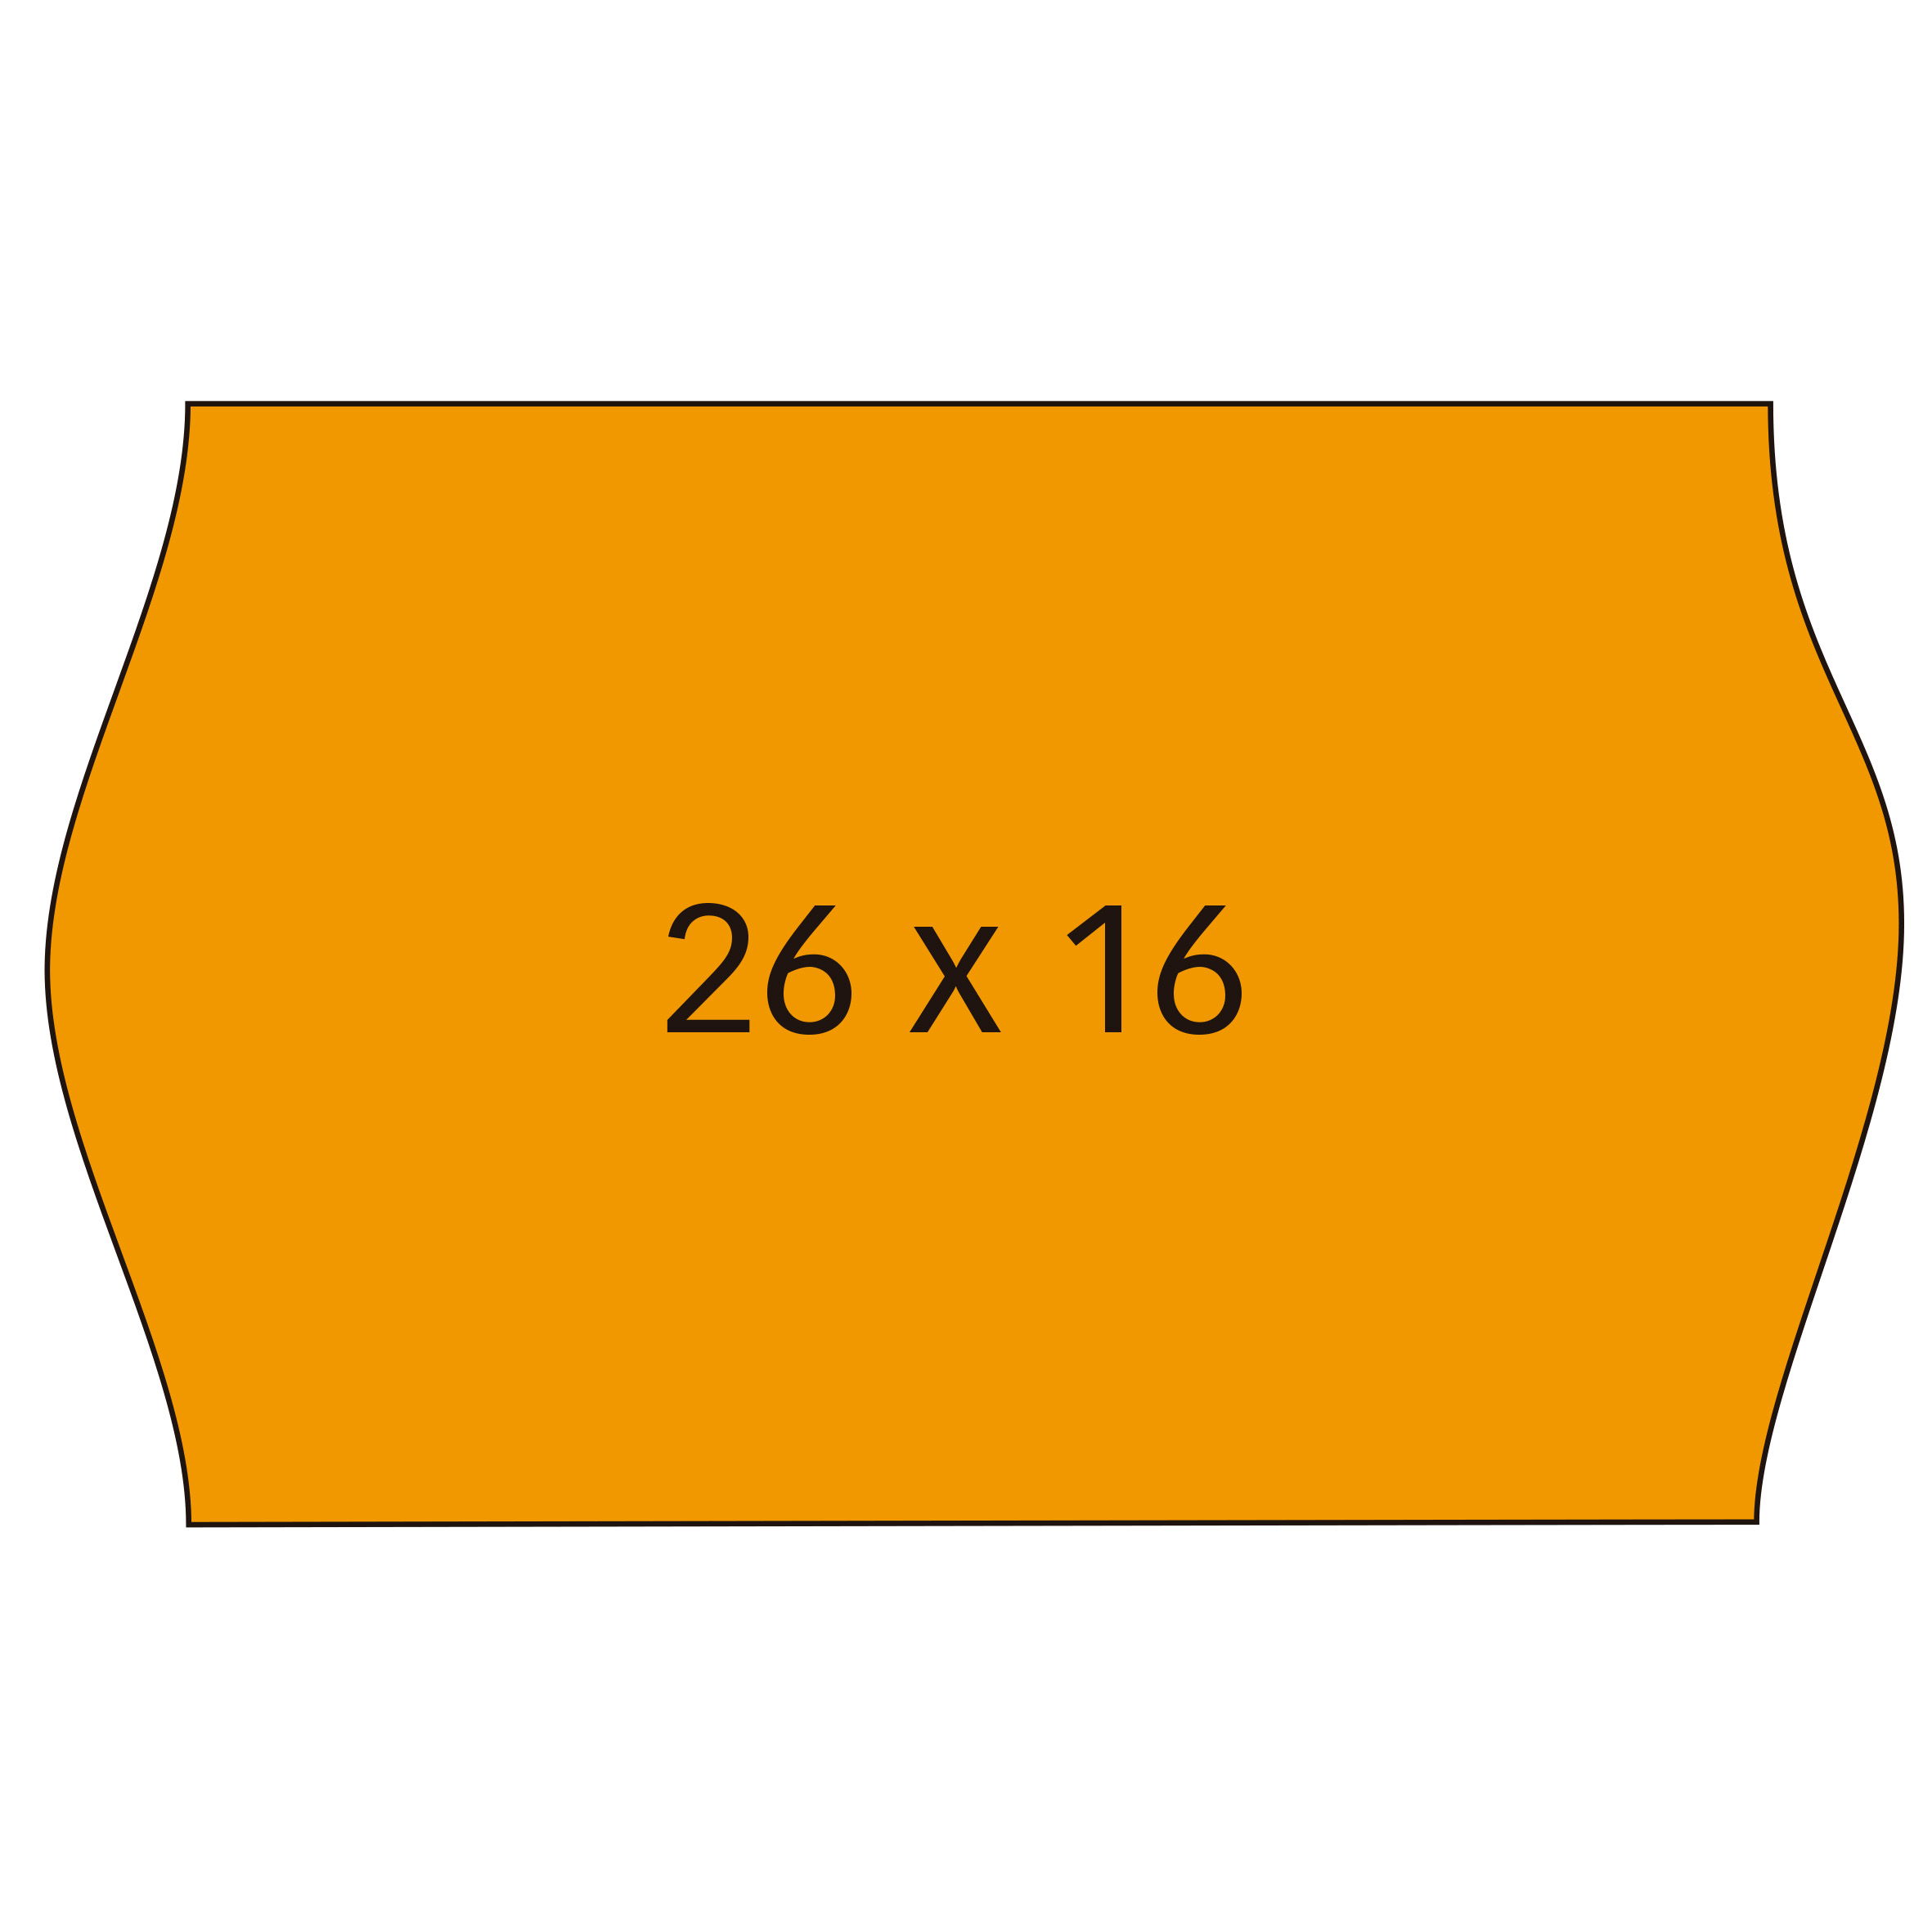 Apli Etiquettes Orange Amovibles 26x16mm pour Machines de Prix 2 Lignes - Lot de 6 Rouleaux - Bords Sinusoïdaux - Marquage Haute Qualité